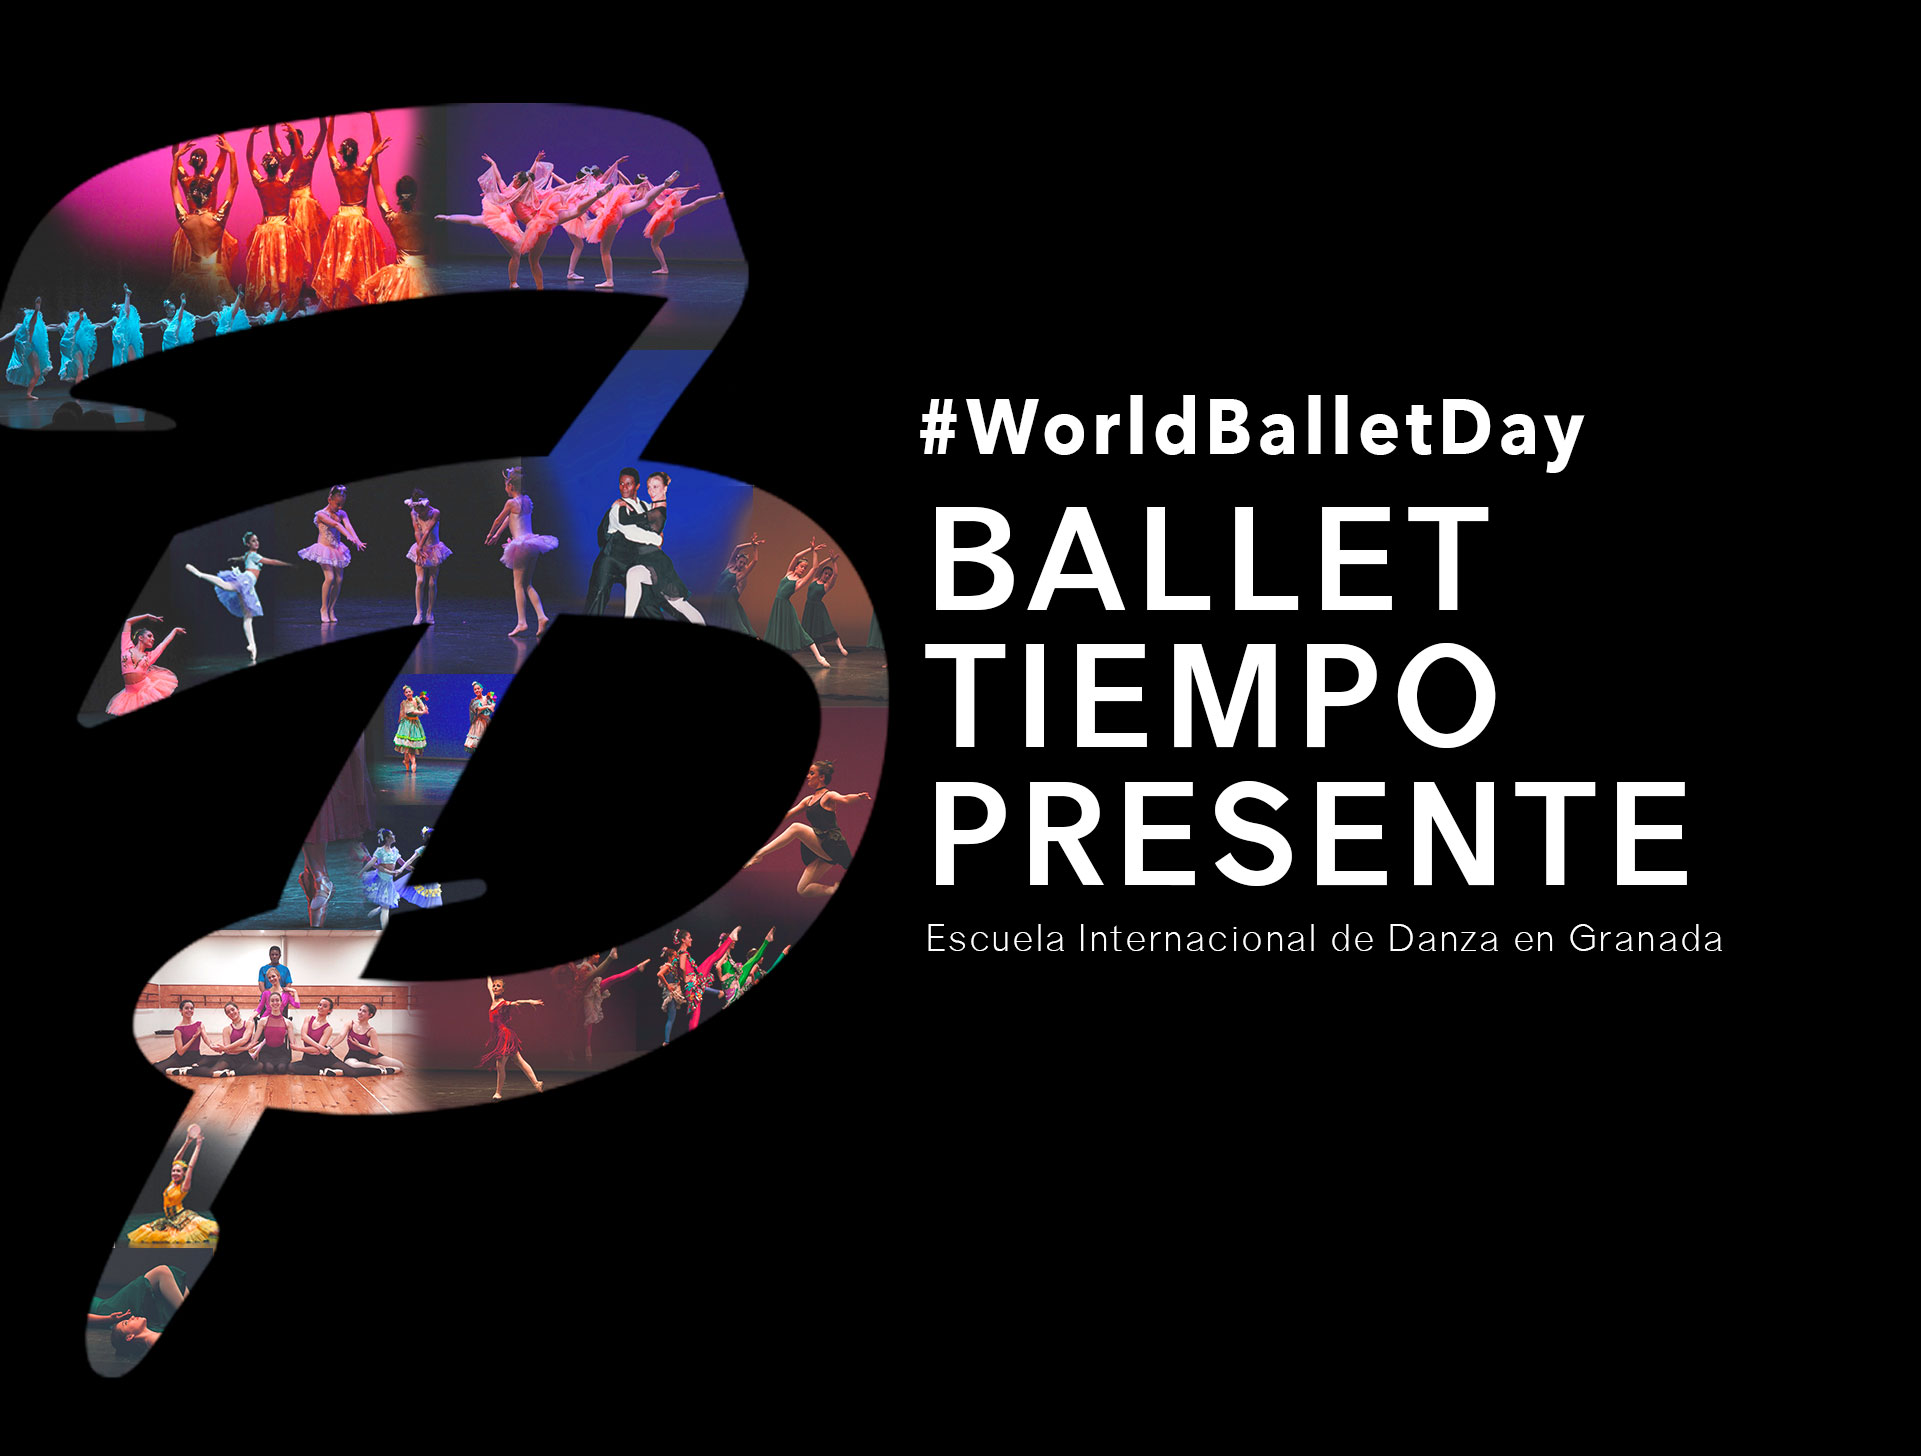 Happy World Ballet Day 2019